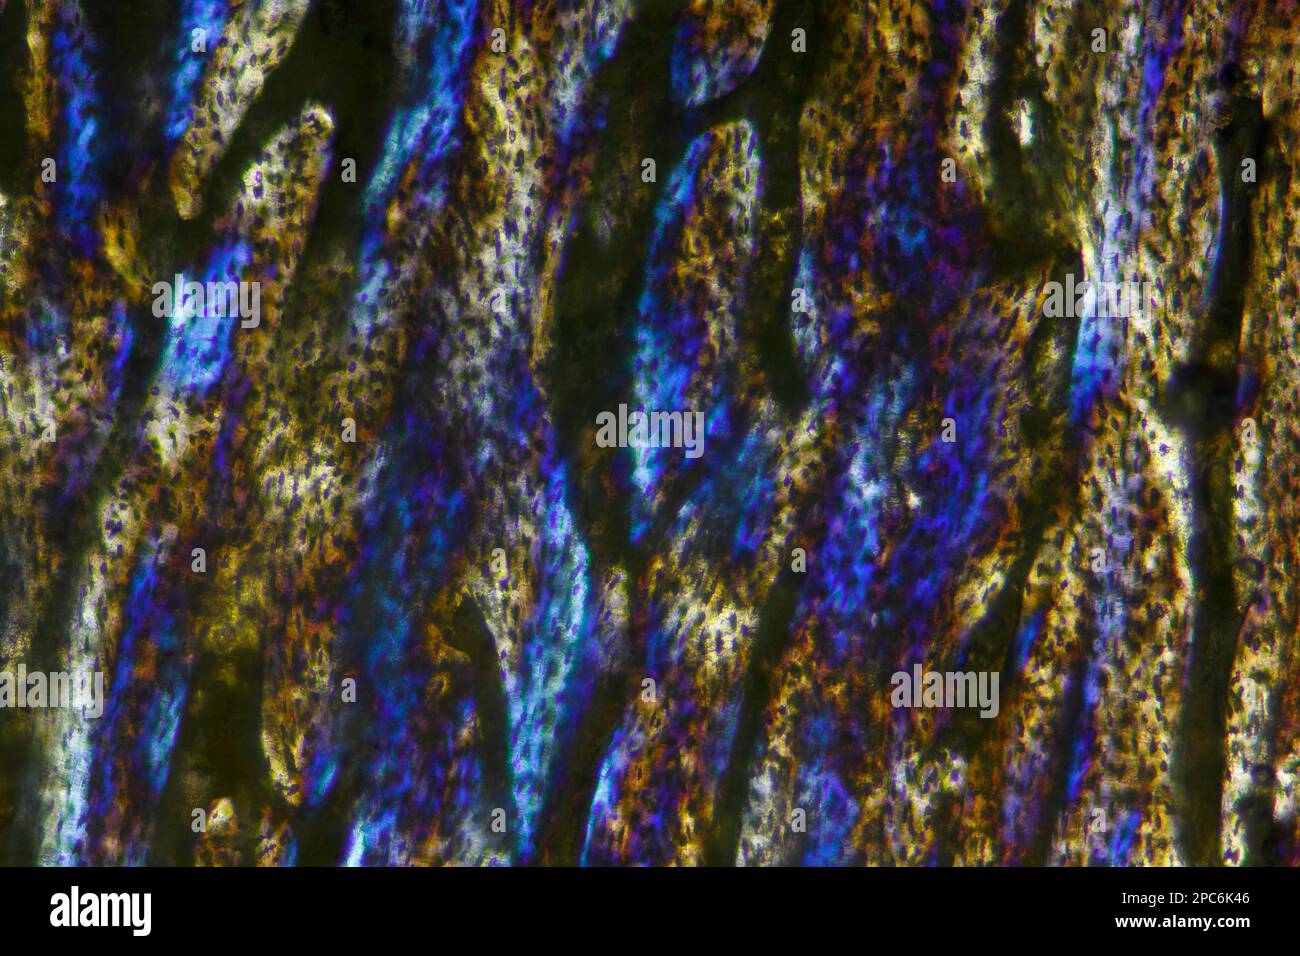 Mikroskopische Darstellung des Knochenschnitts der hauspute (Meleagris gallopavo domesticus). Polarisiertes Licht mit teilweise gekreuzten Polarisatoren. Stockfoto